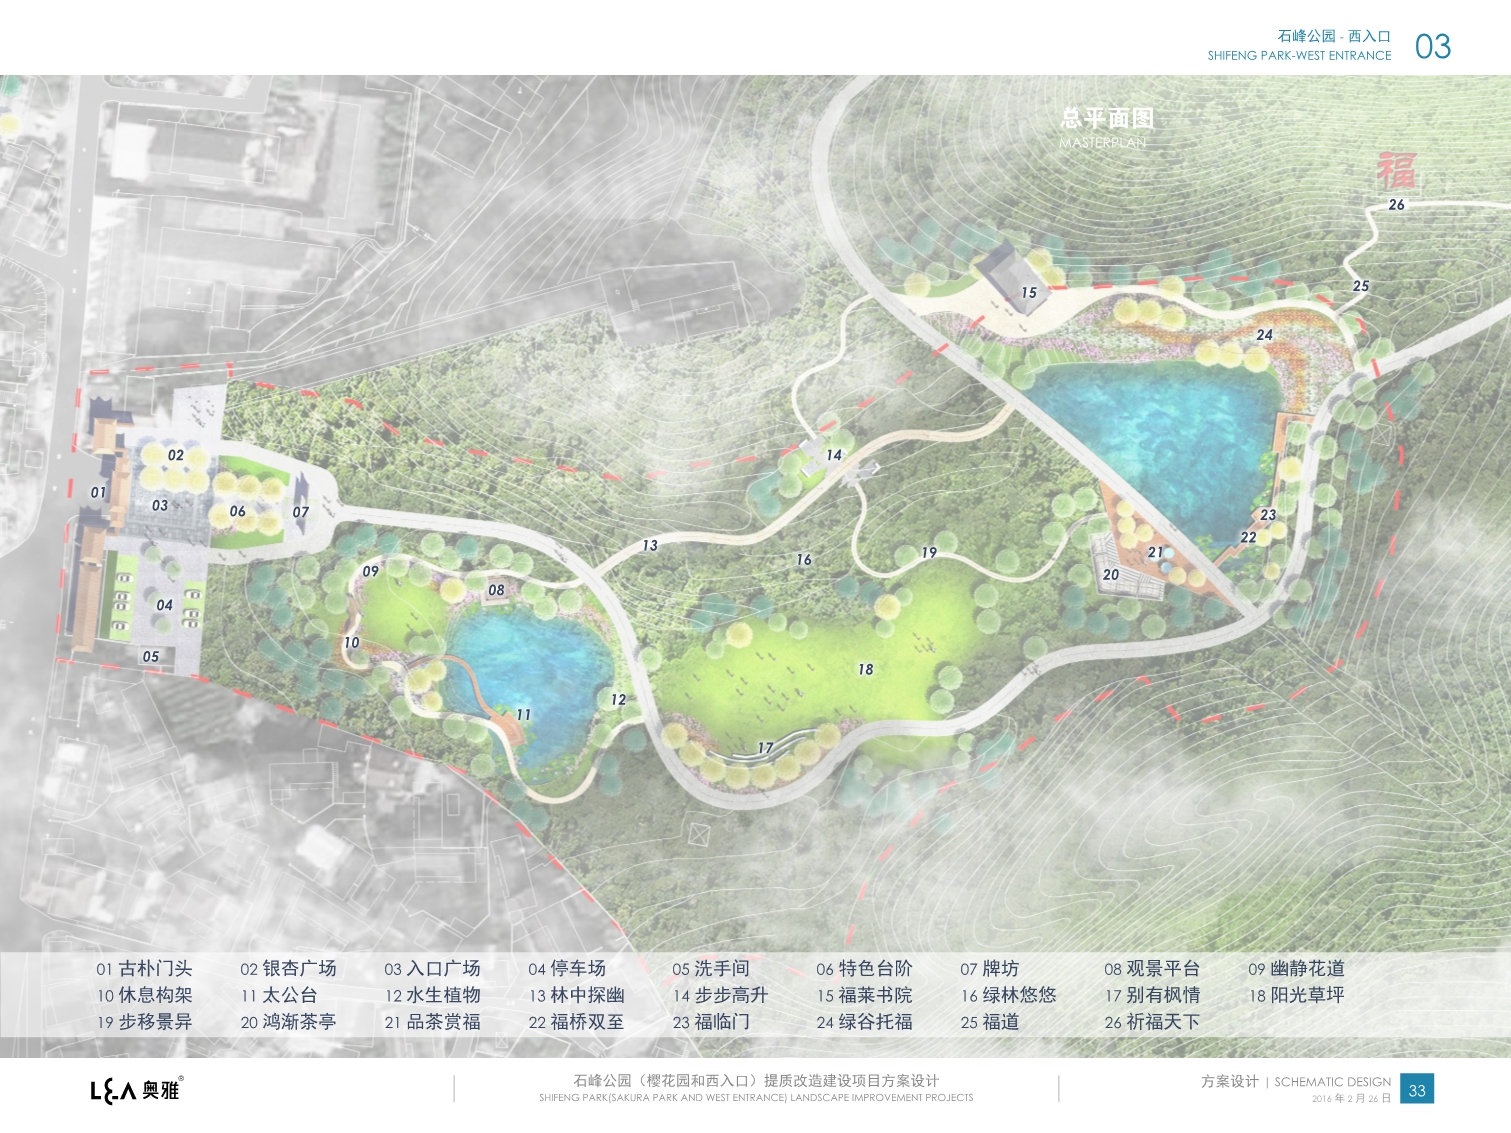 石峰公园(樱花园和西入口)提质改造建设项目方案设计 奥雅